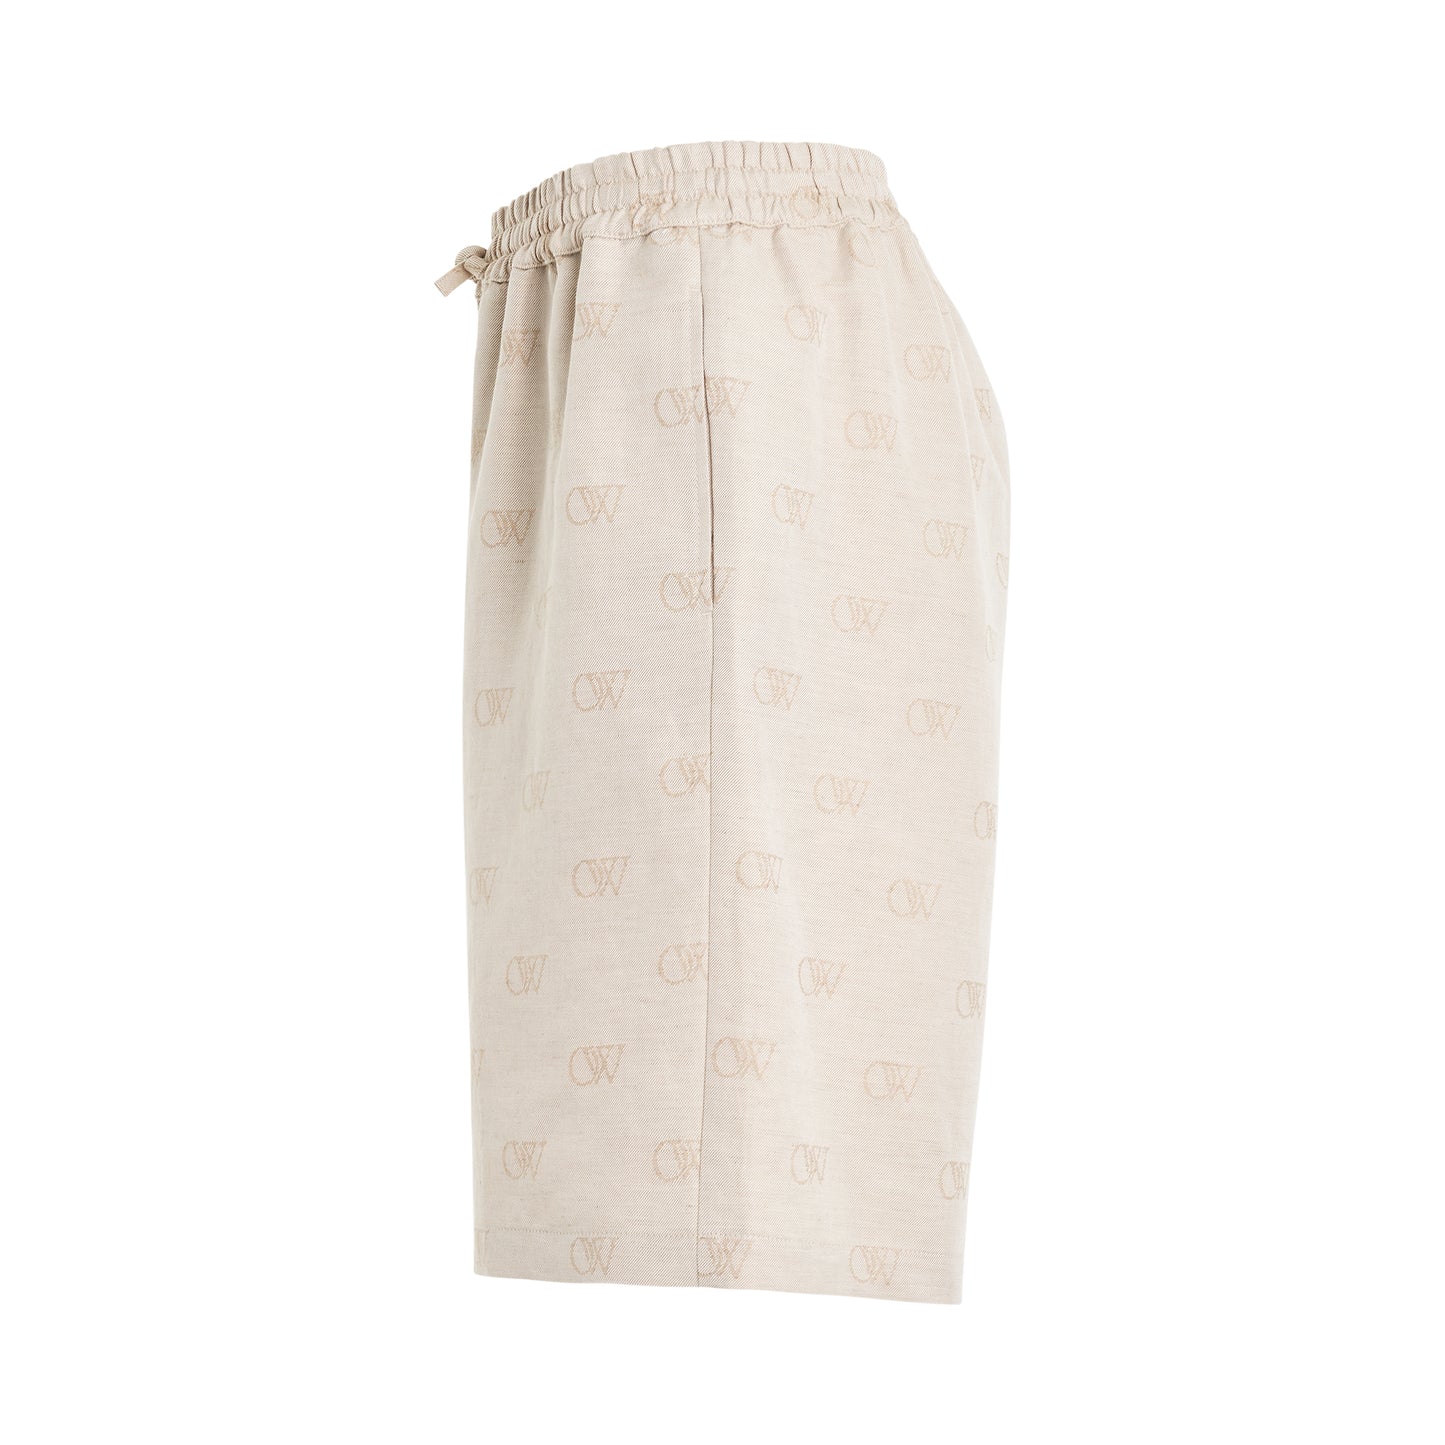 Linen Short Pants in Cream